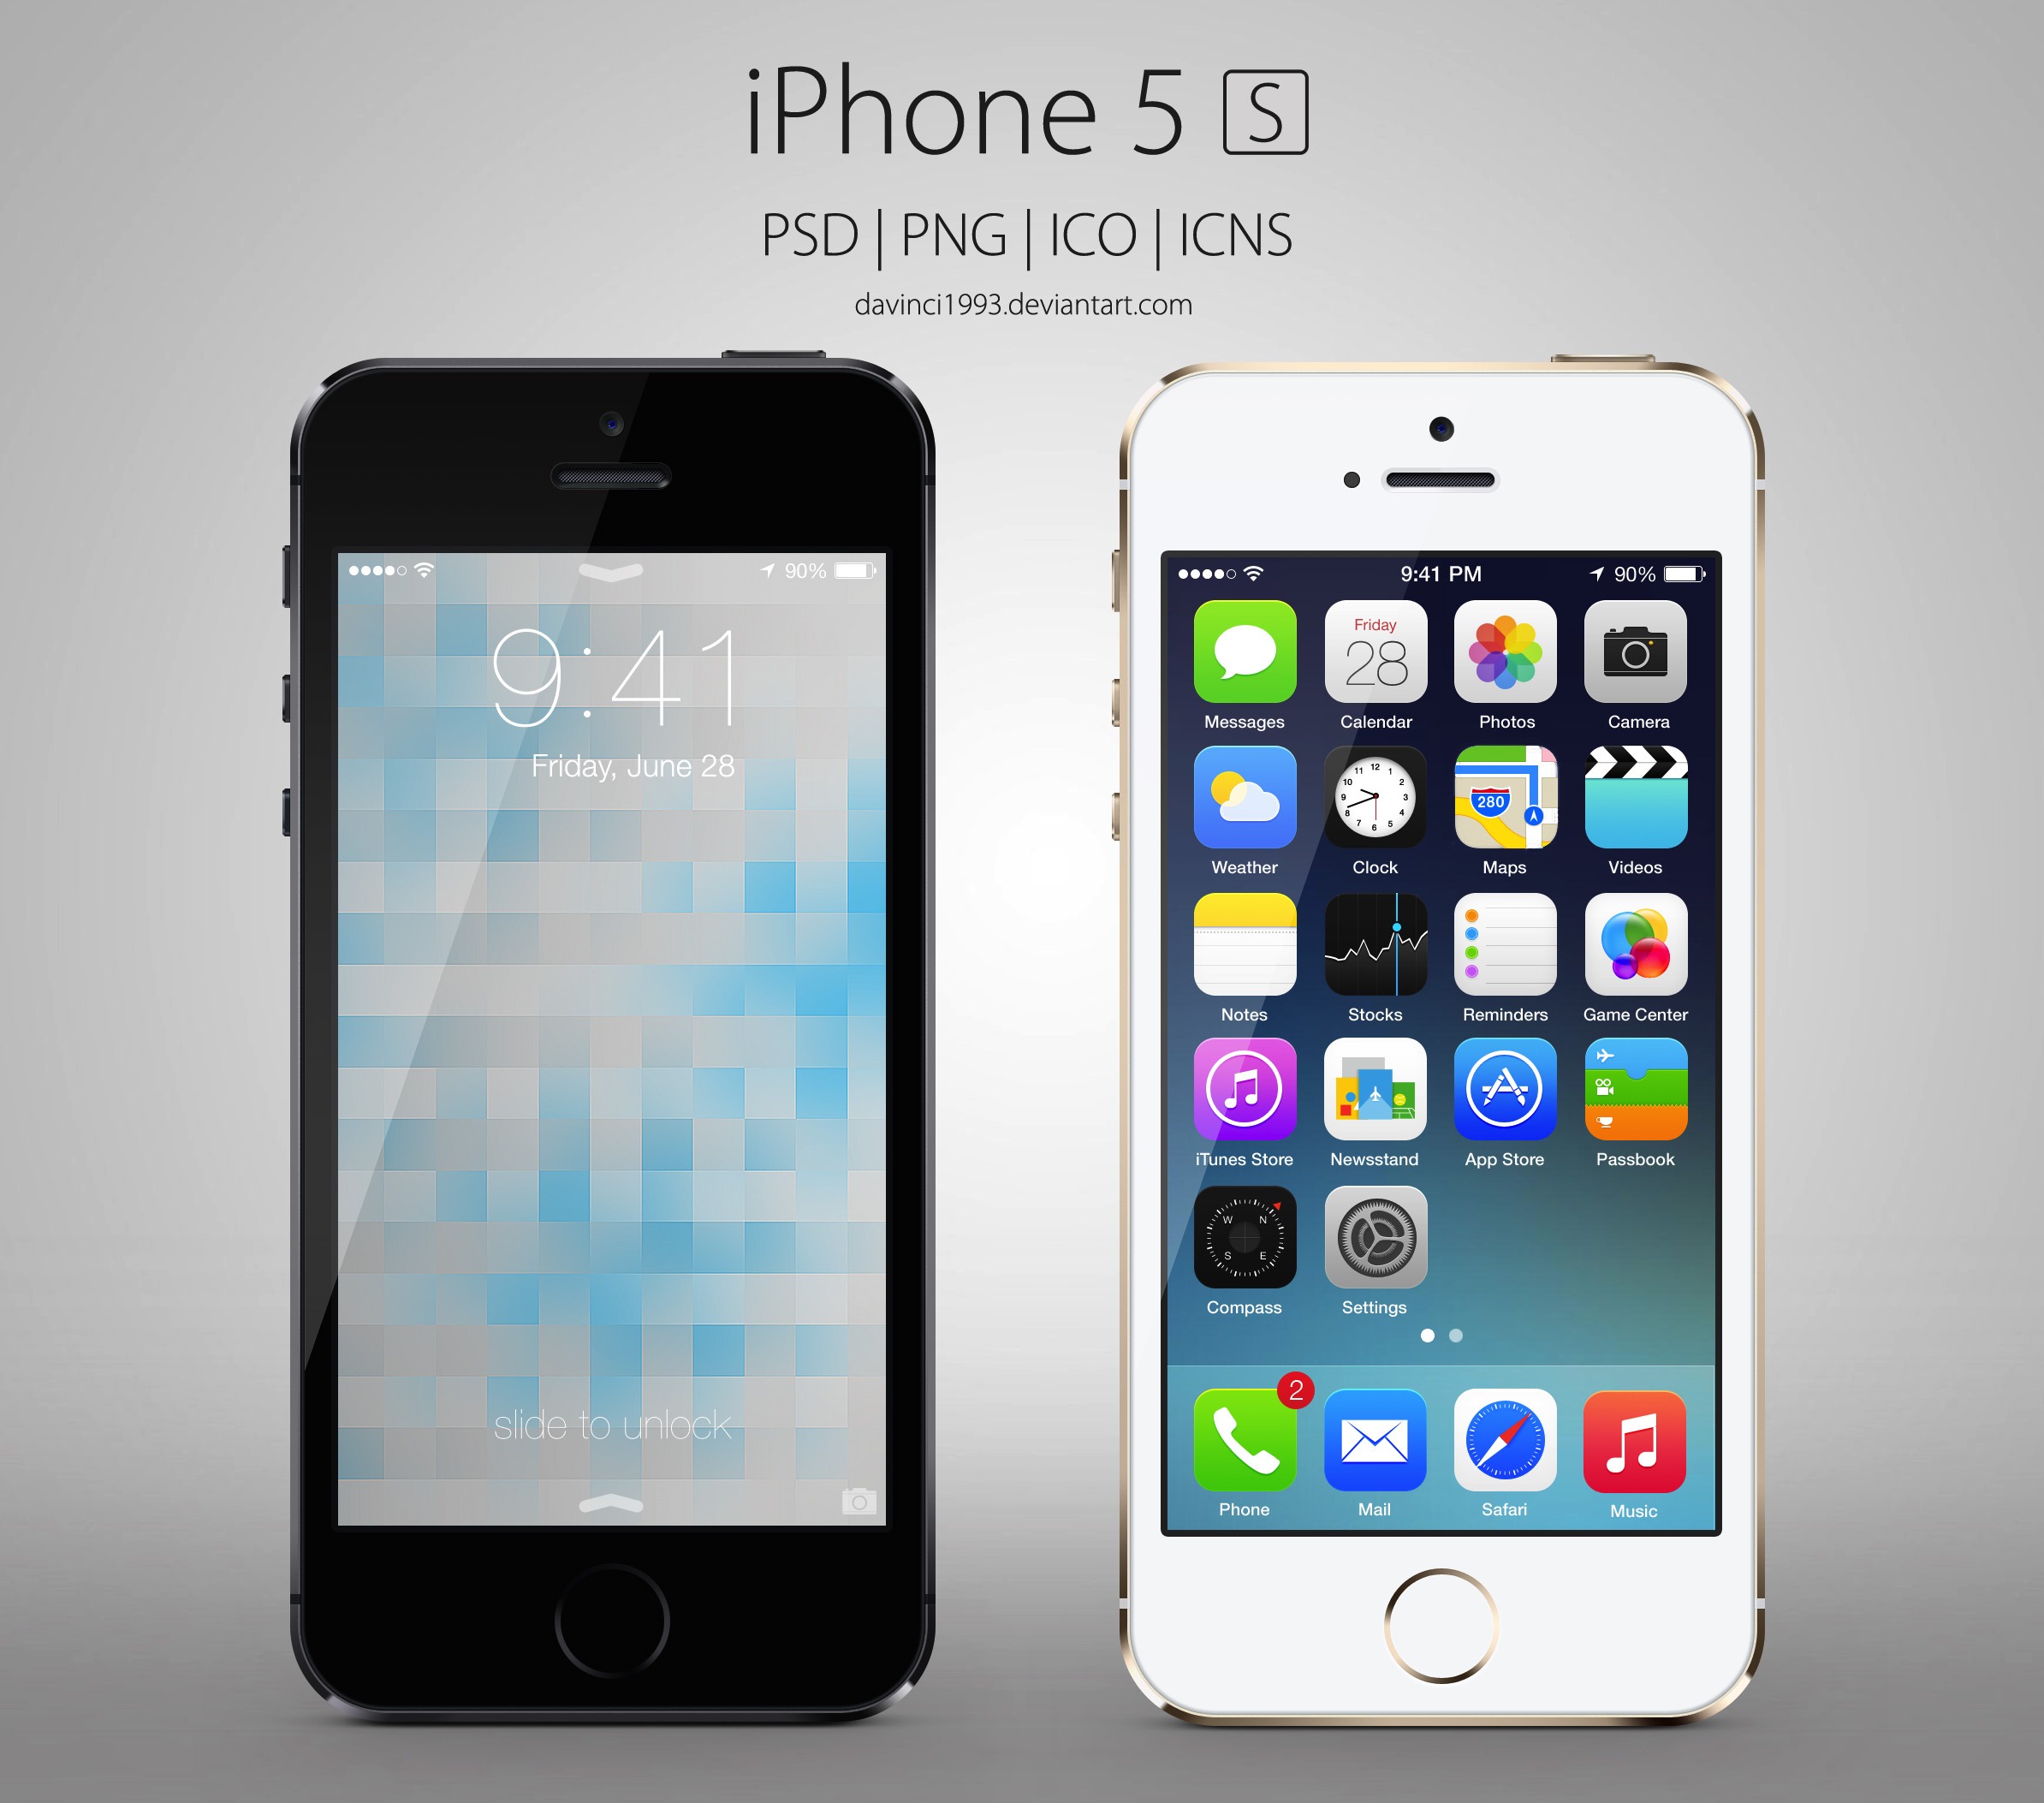 Iphone 5s – produsul a 6 ani de evolutie constanta marca iPhone